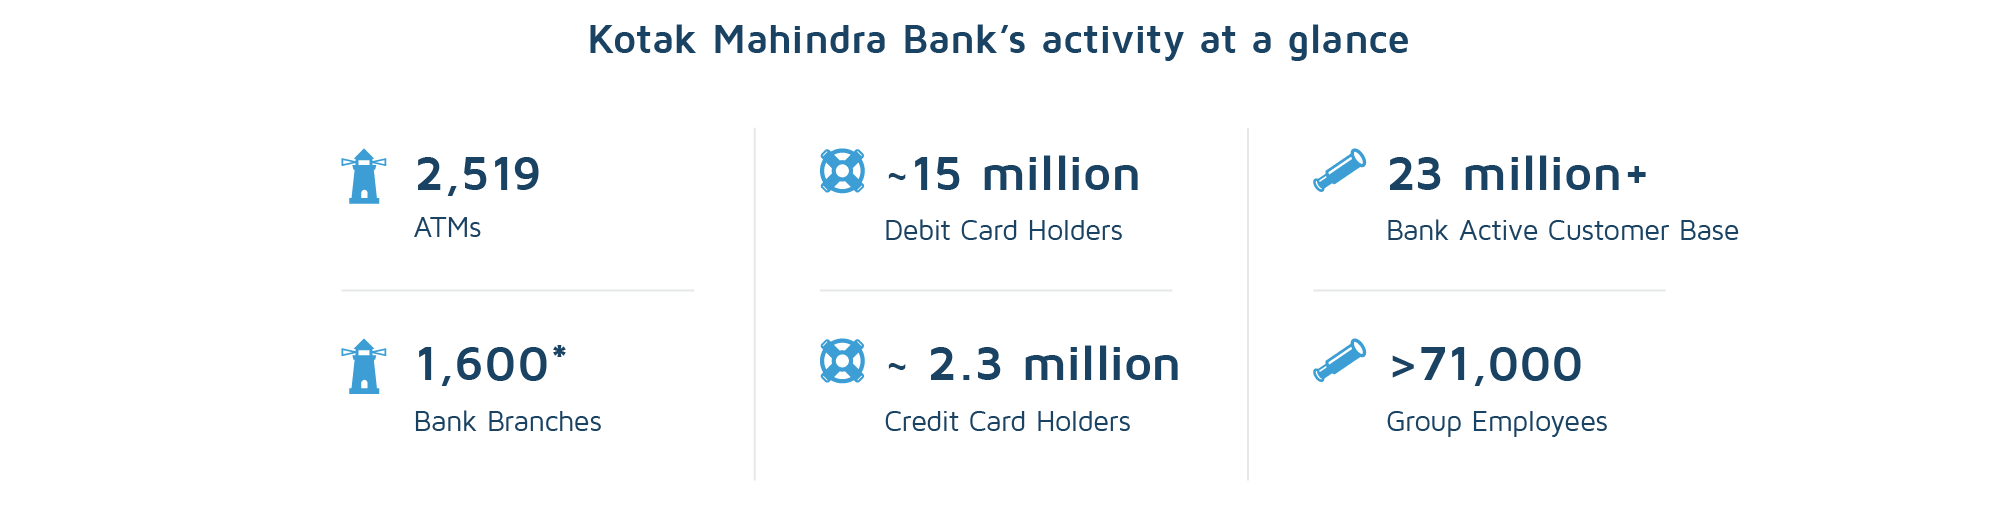 The activity of the Kotak Mahindra Bank at a glance